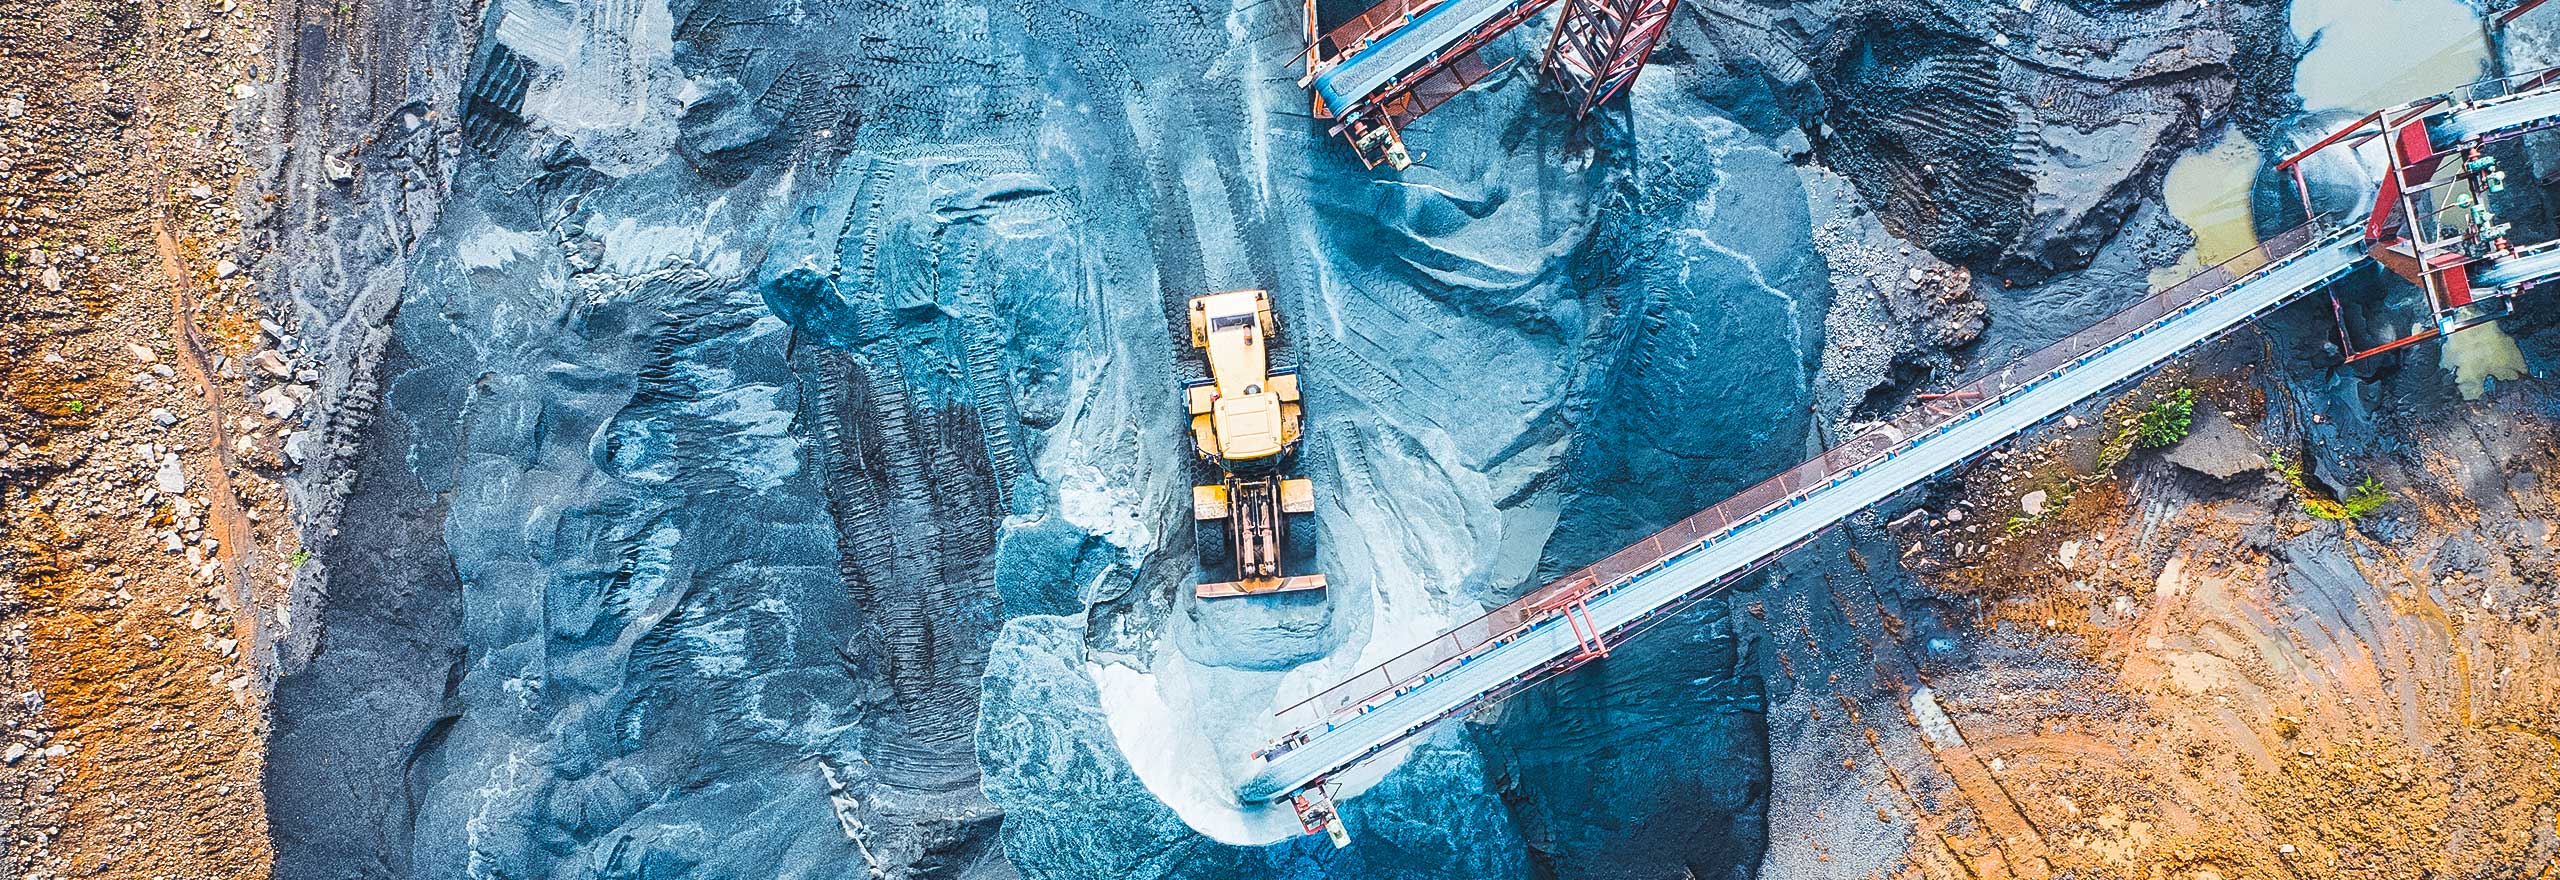 Vue aérienne d’un site minier